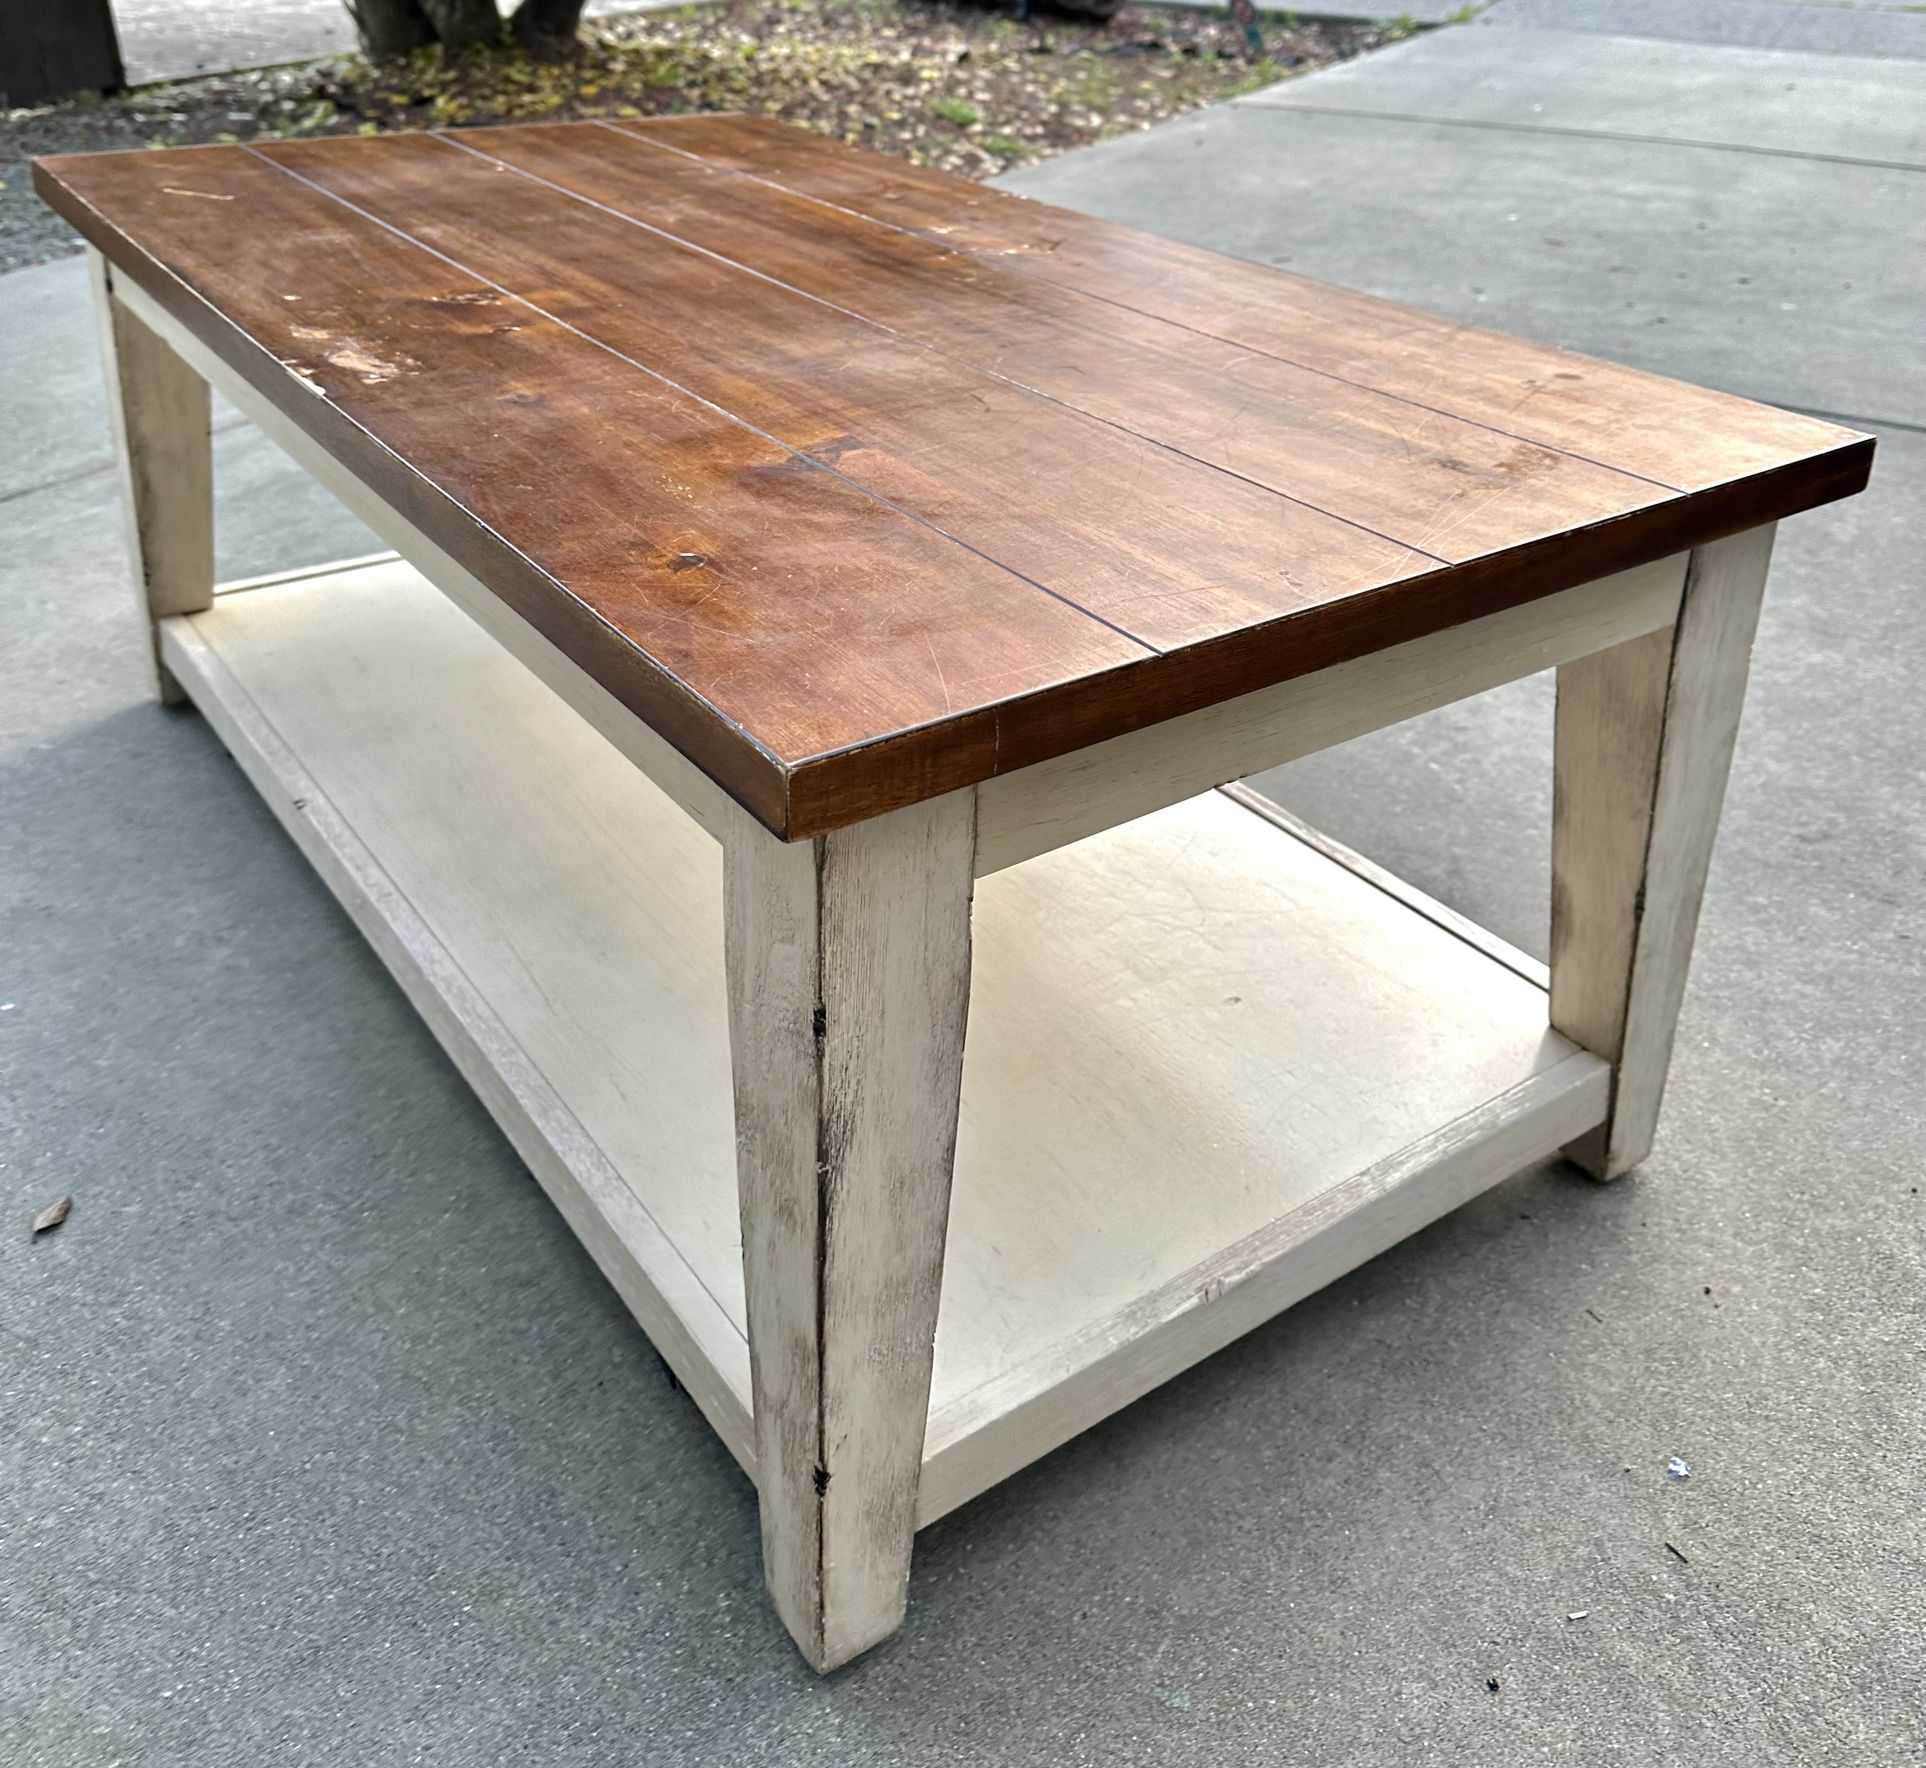 Coffee Table For Sale $50 - Dark Walnut 48” L X 26”D